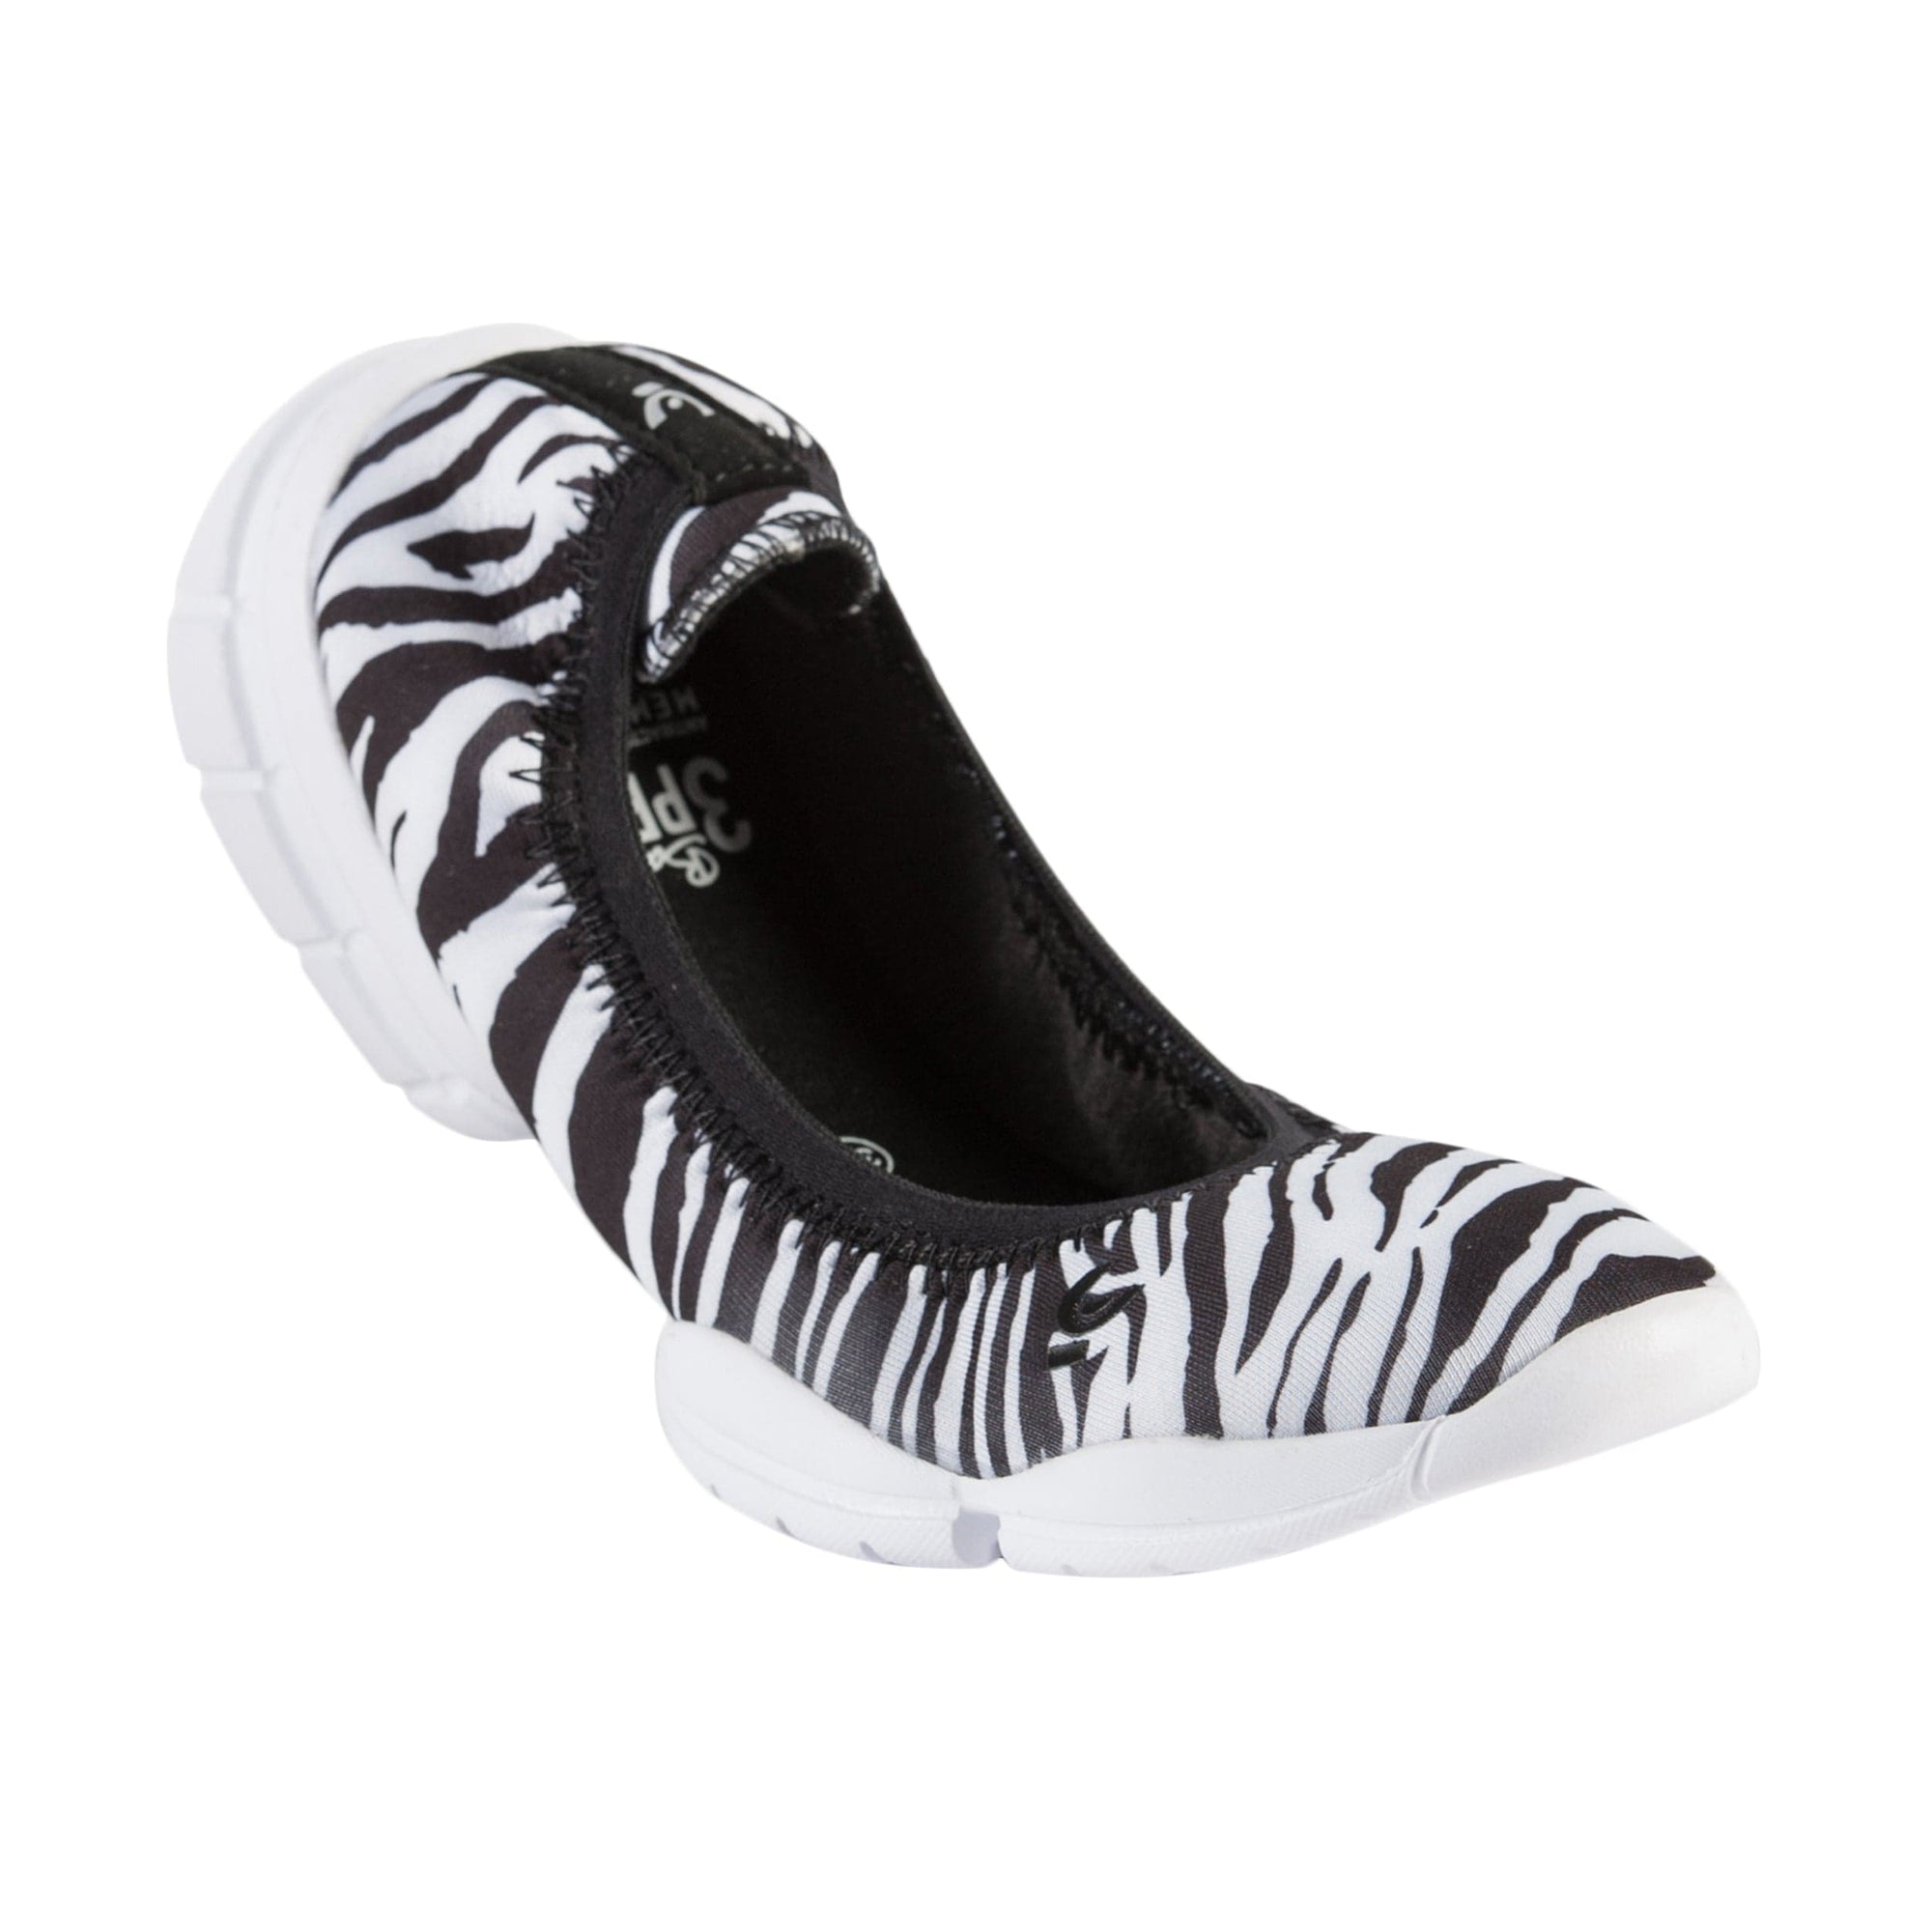 3Pro Ballerina Shoes - Zebra Pattern 2